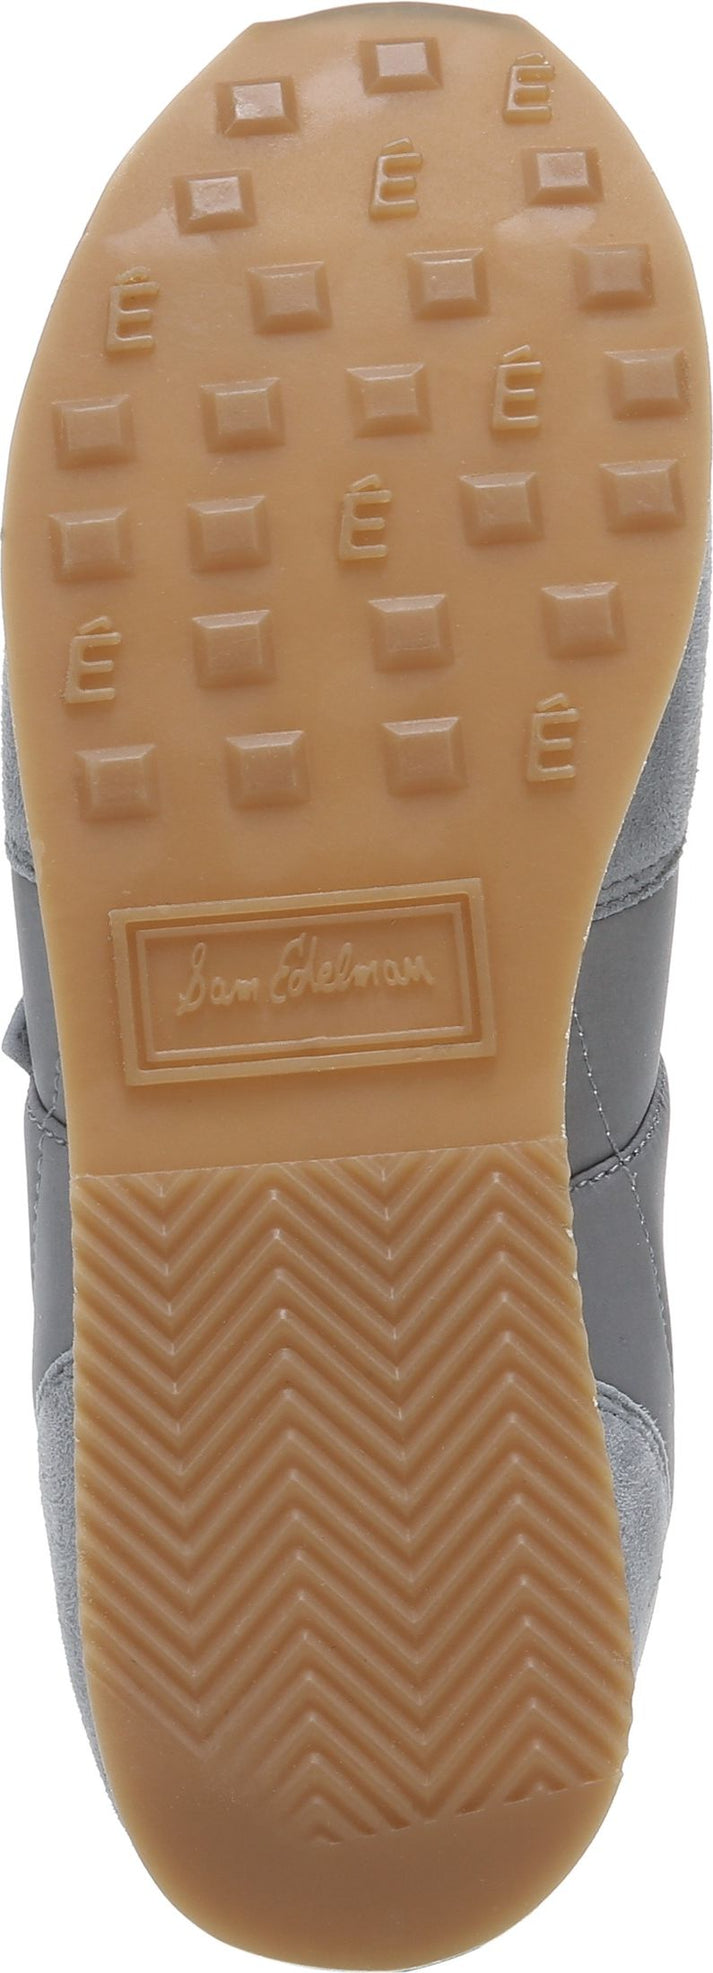 Sam Edelman Shoes Tori Riverrock